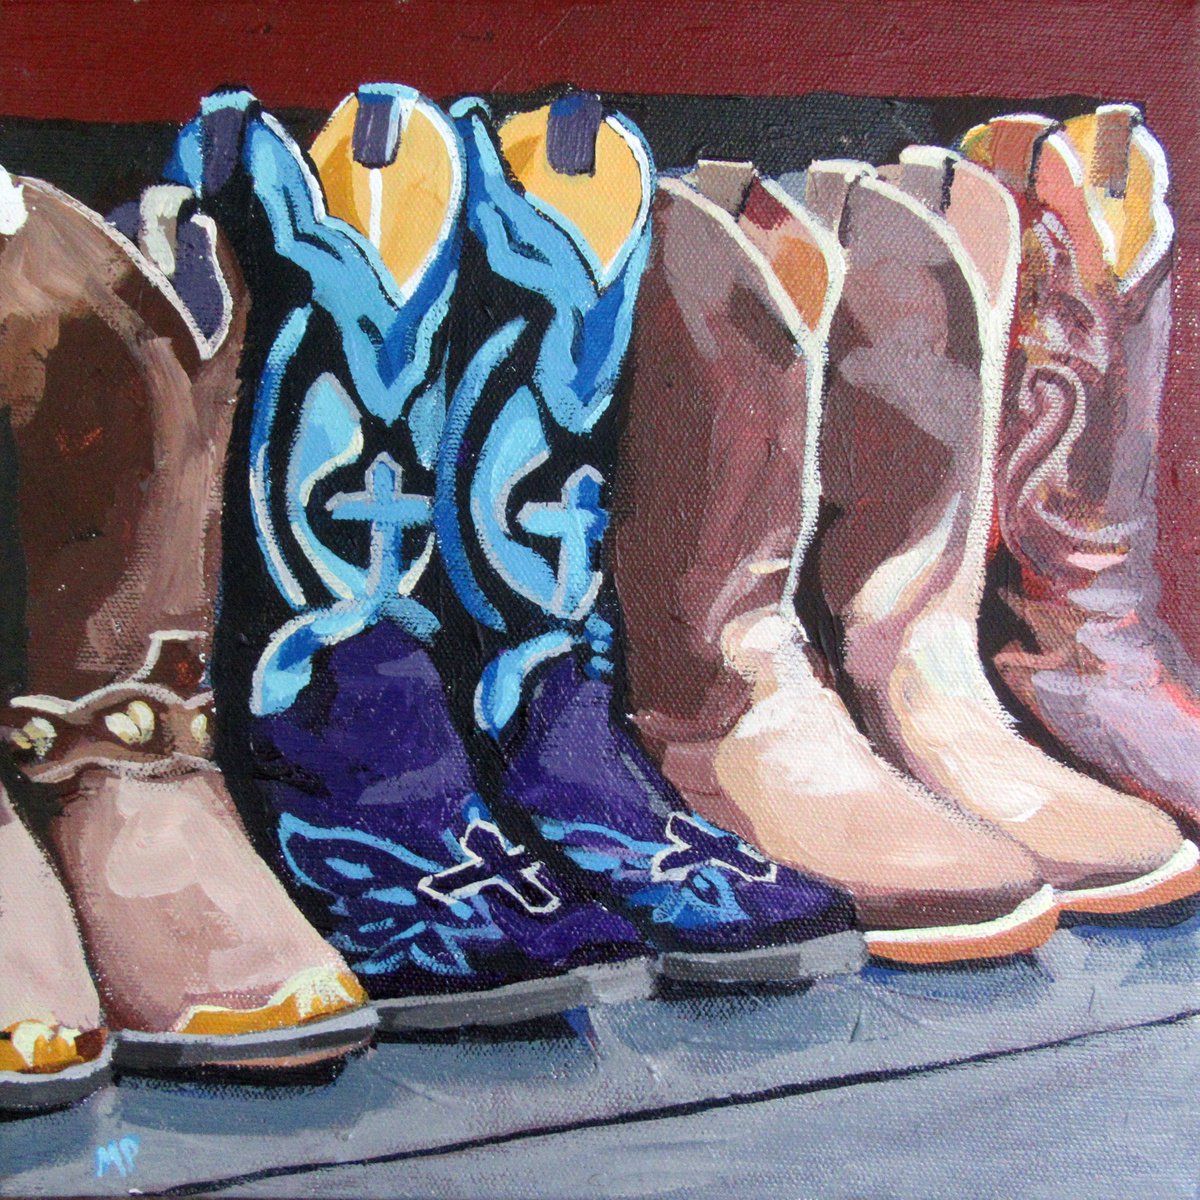 Boots on a Shelf by Melinda Patrick